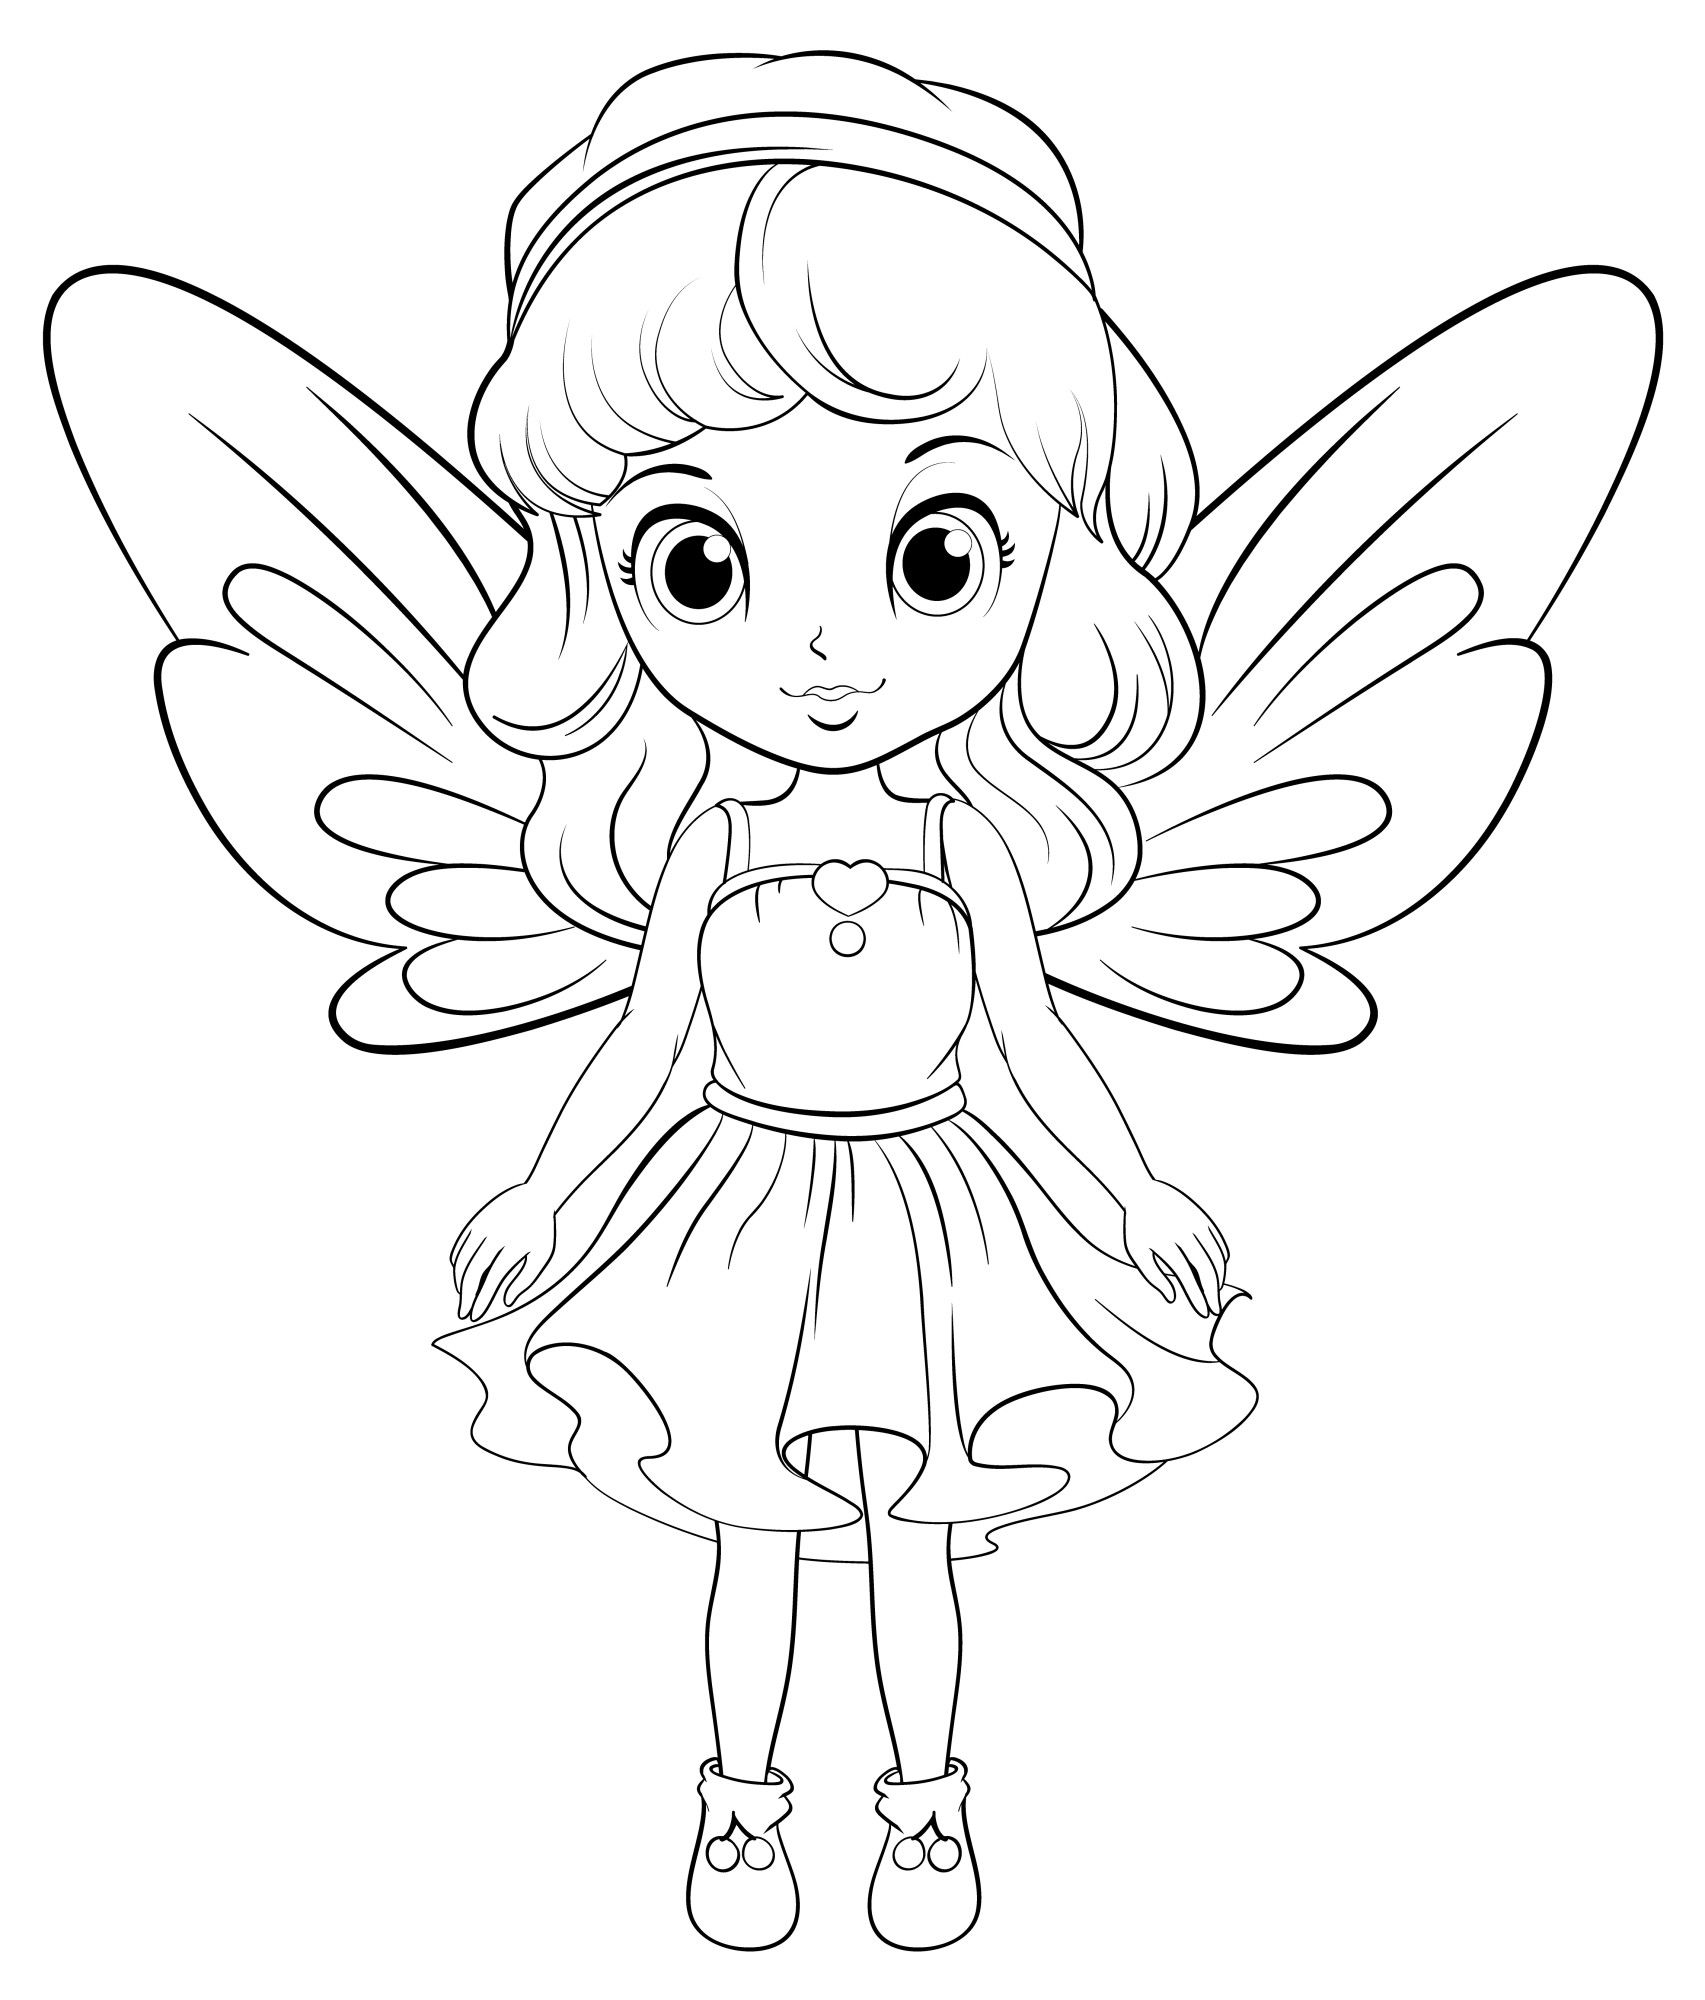 Раскраска для детей: маленькая фея бабочка